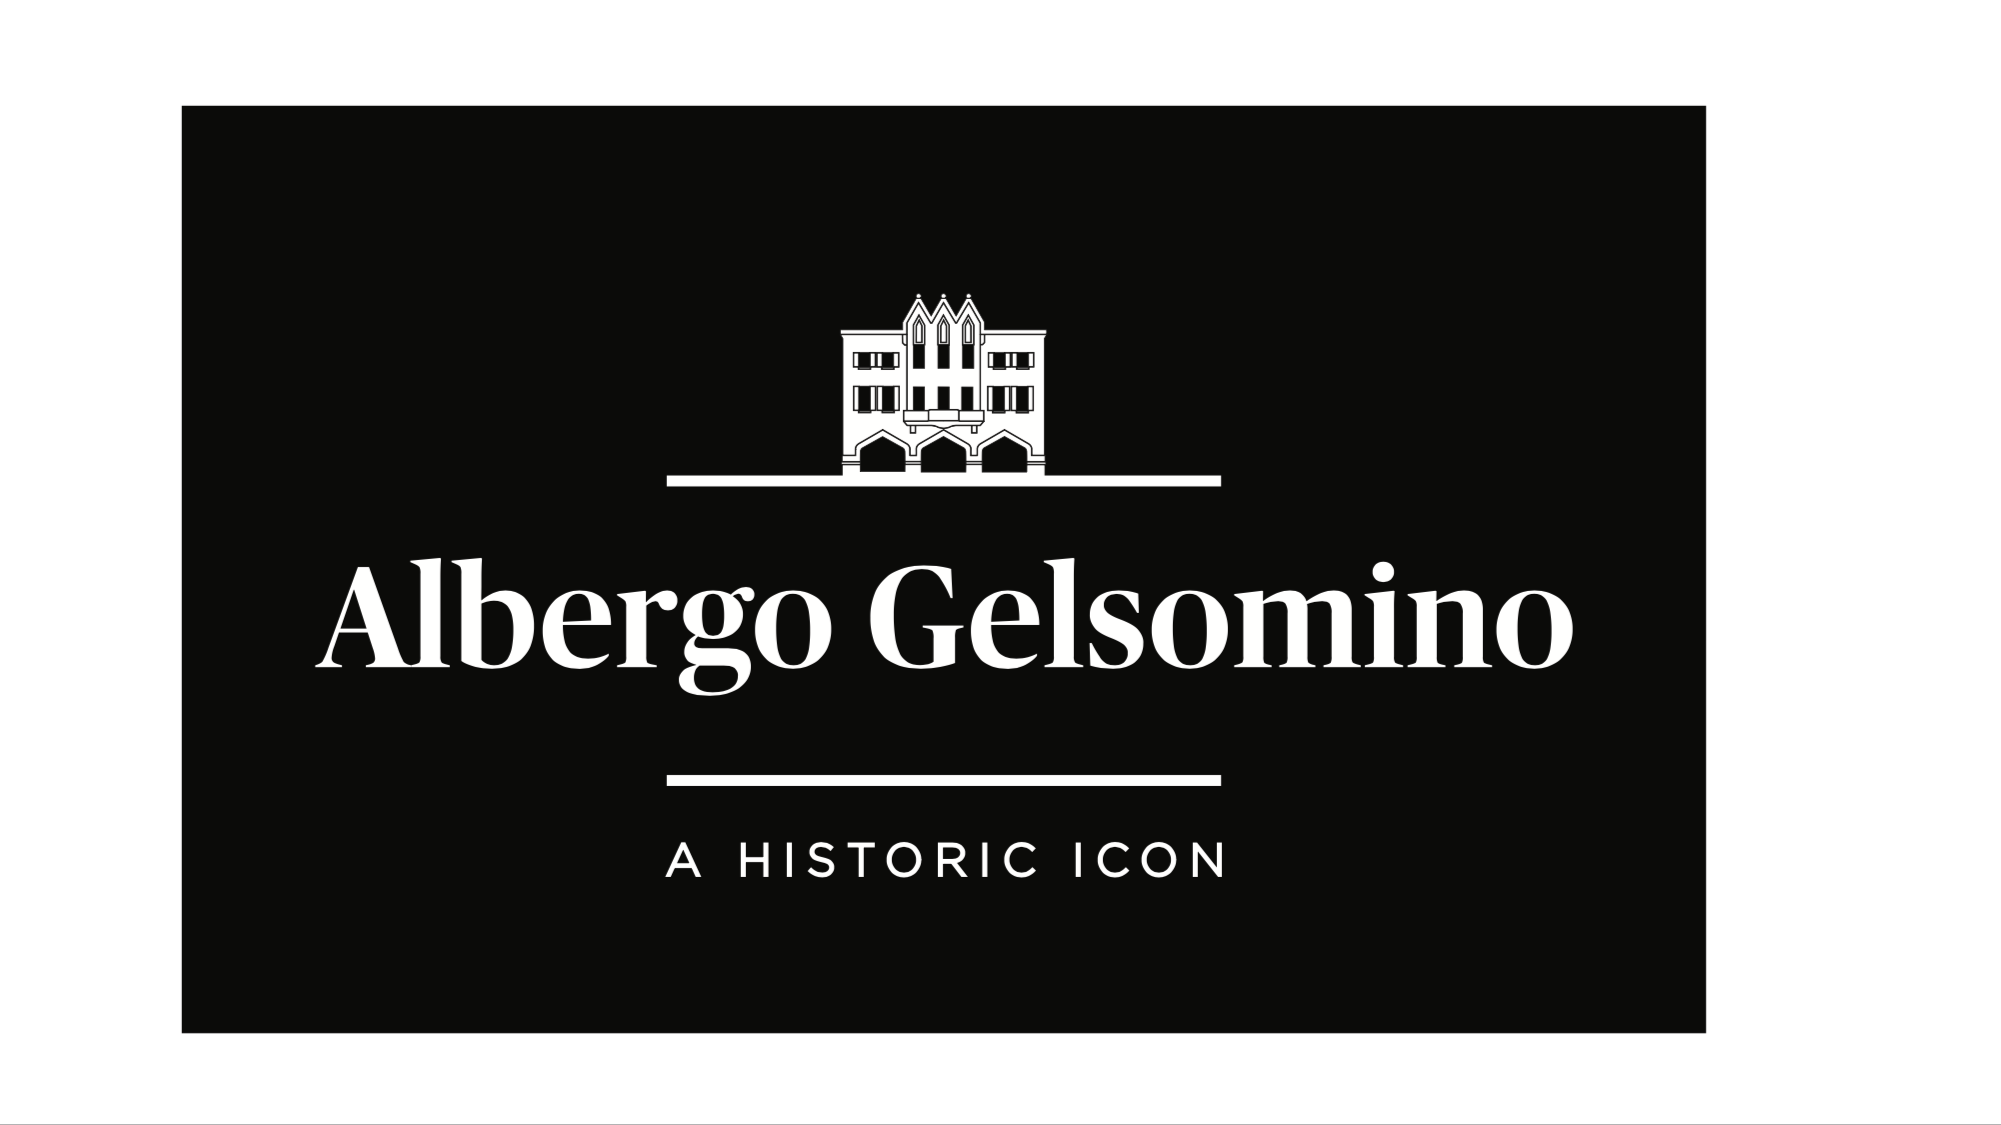 ALBERGO GELSOMINO